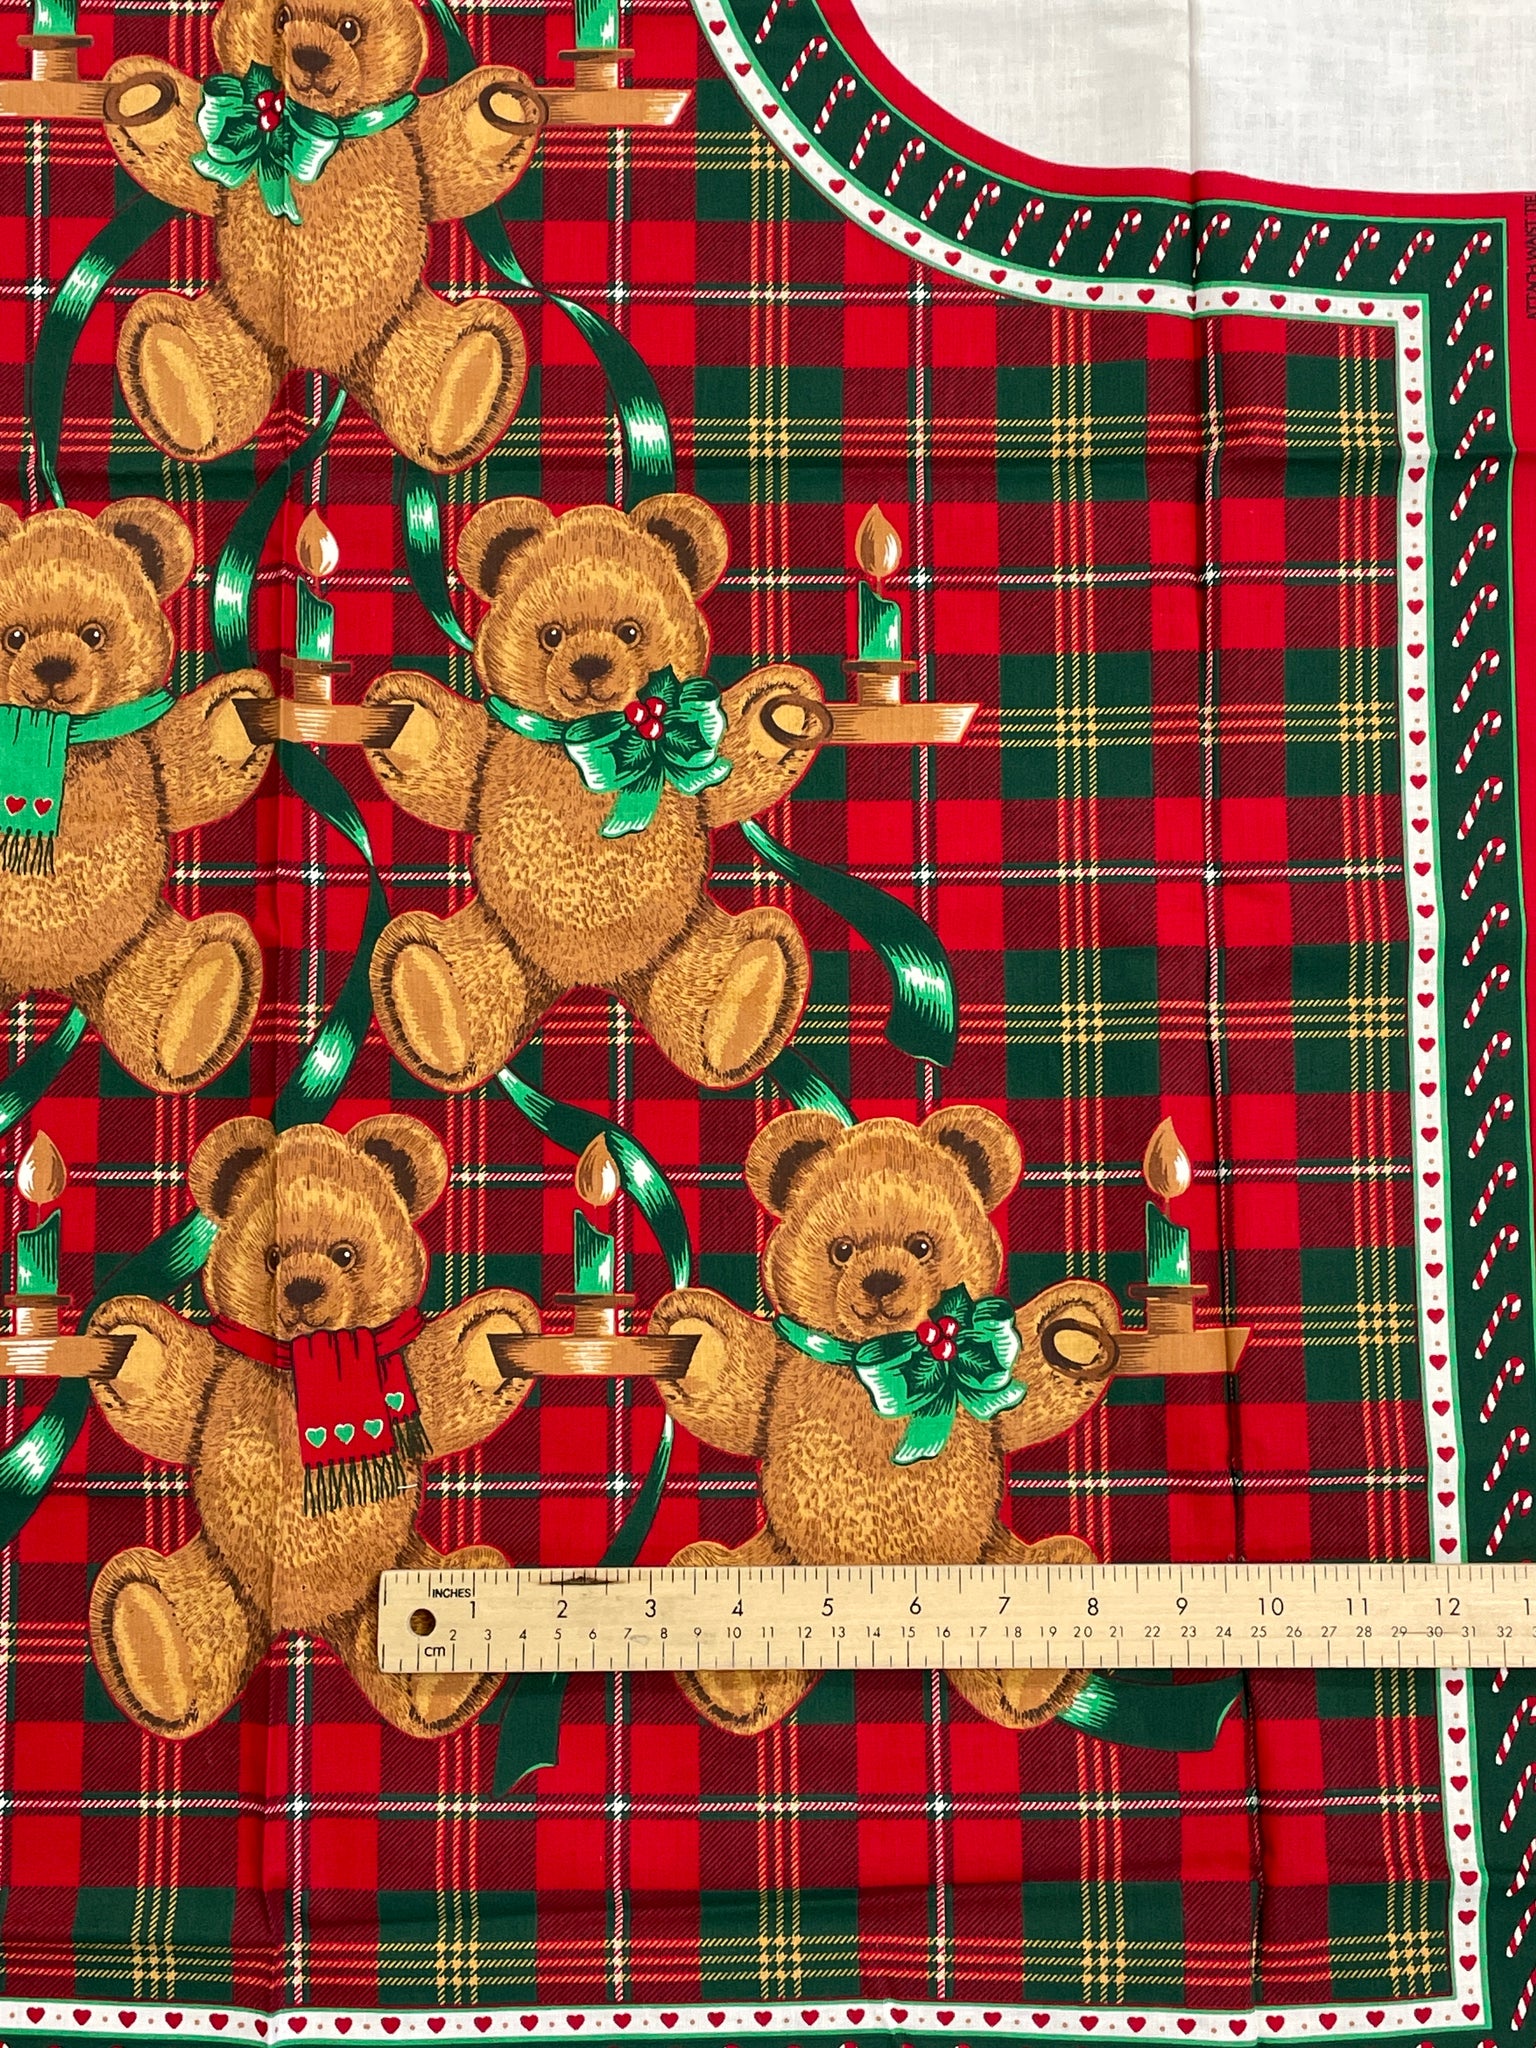 1 YD Cotton Christmas Panel Vintage - Christmas Apron with Teddy Bears